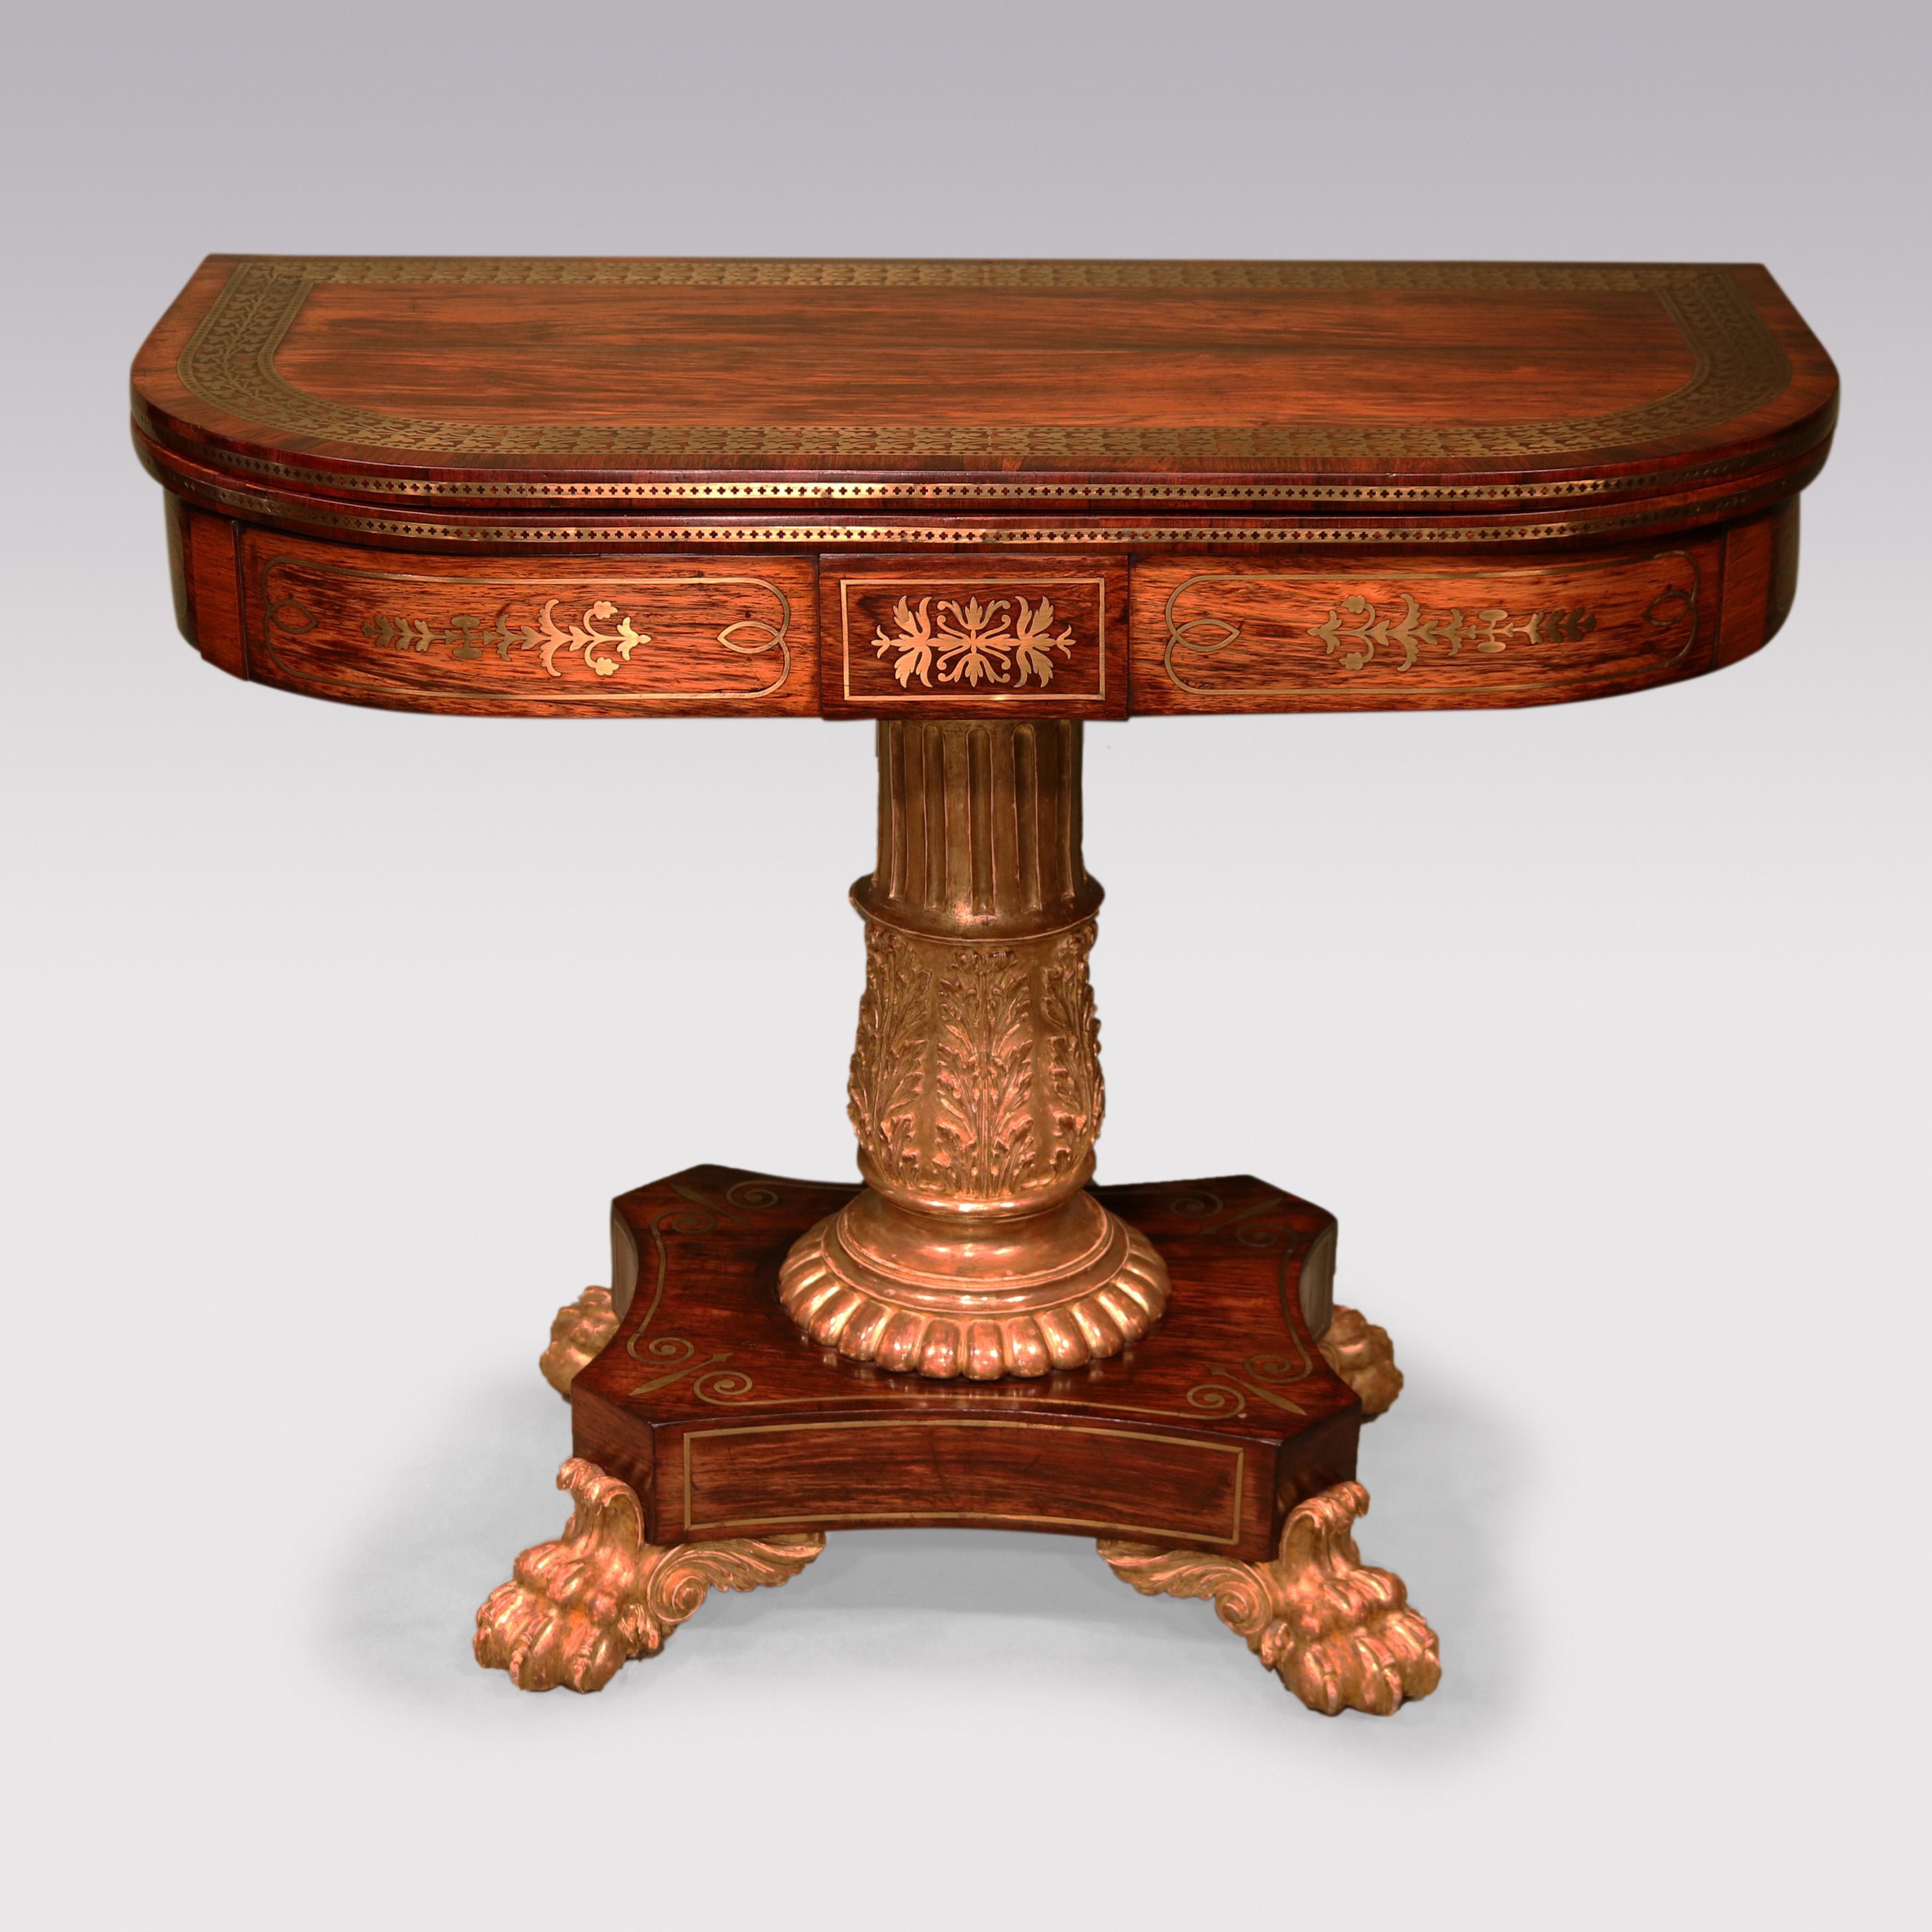 Rare table à cartes en forme de D en bois de rose de la fin de la période Regency, avec des incrustations en laiton extrêmement fines à l'intérieur, à l'extérieur et sur la frise, soutenue par un piédestal central cannelé et sculpté d'acanthes,